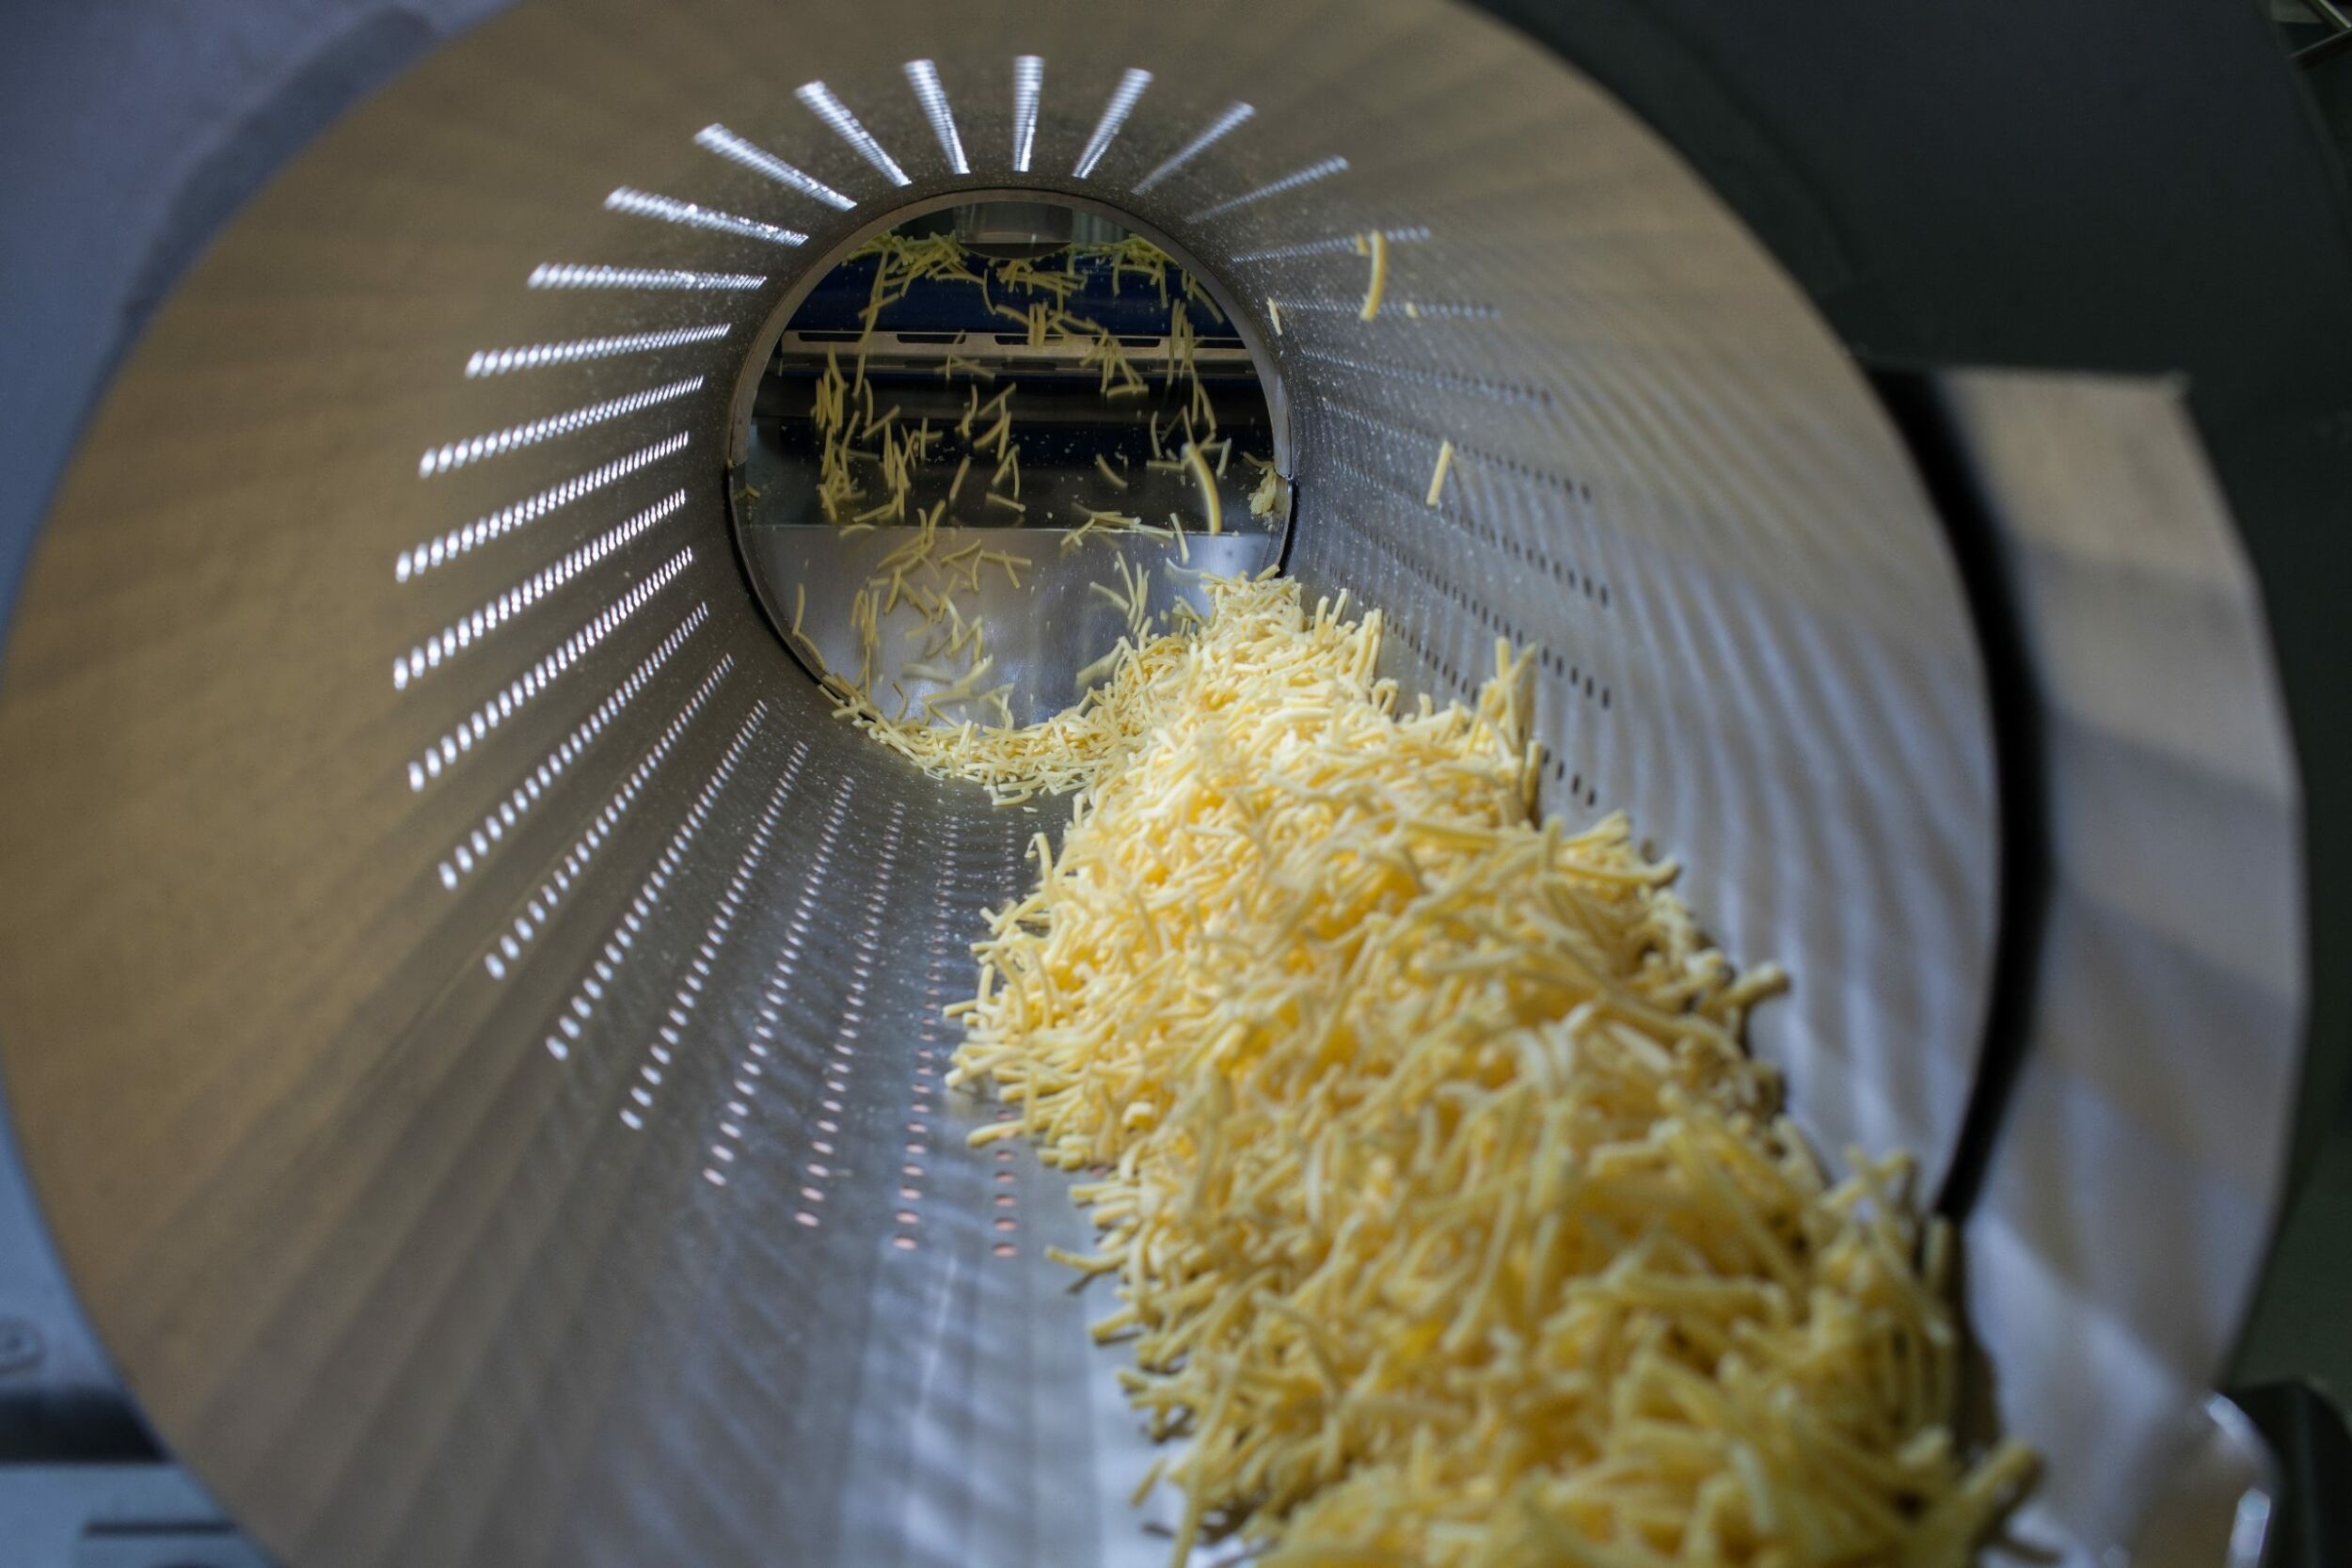 Der Reibkäse entsteht aus großen Käseblöcken, die vorher und nachher gewogen werden. (Bild: Frischpack GmbH)